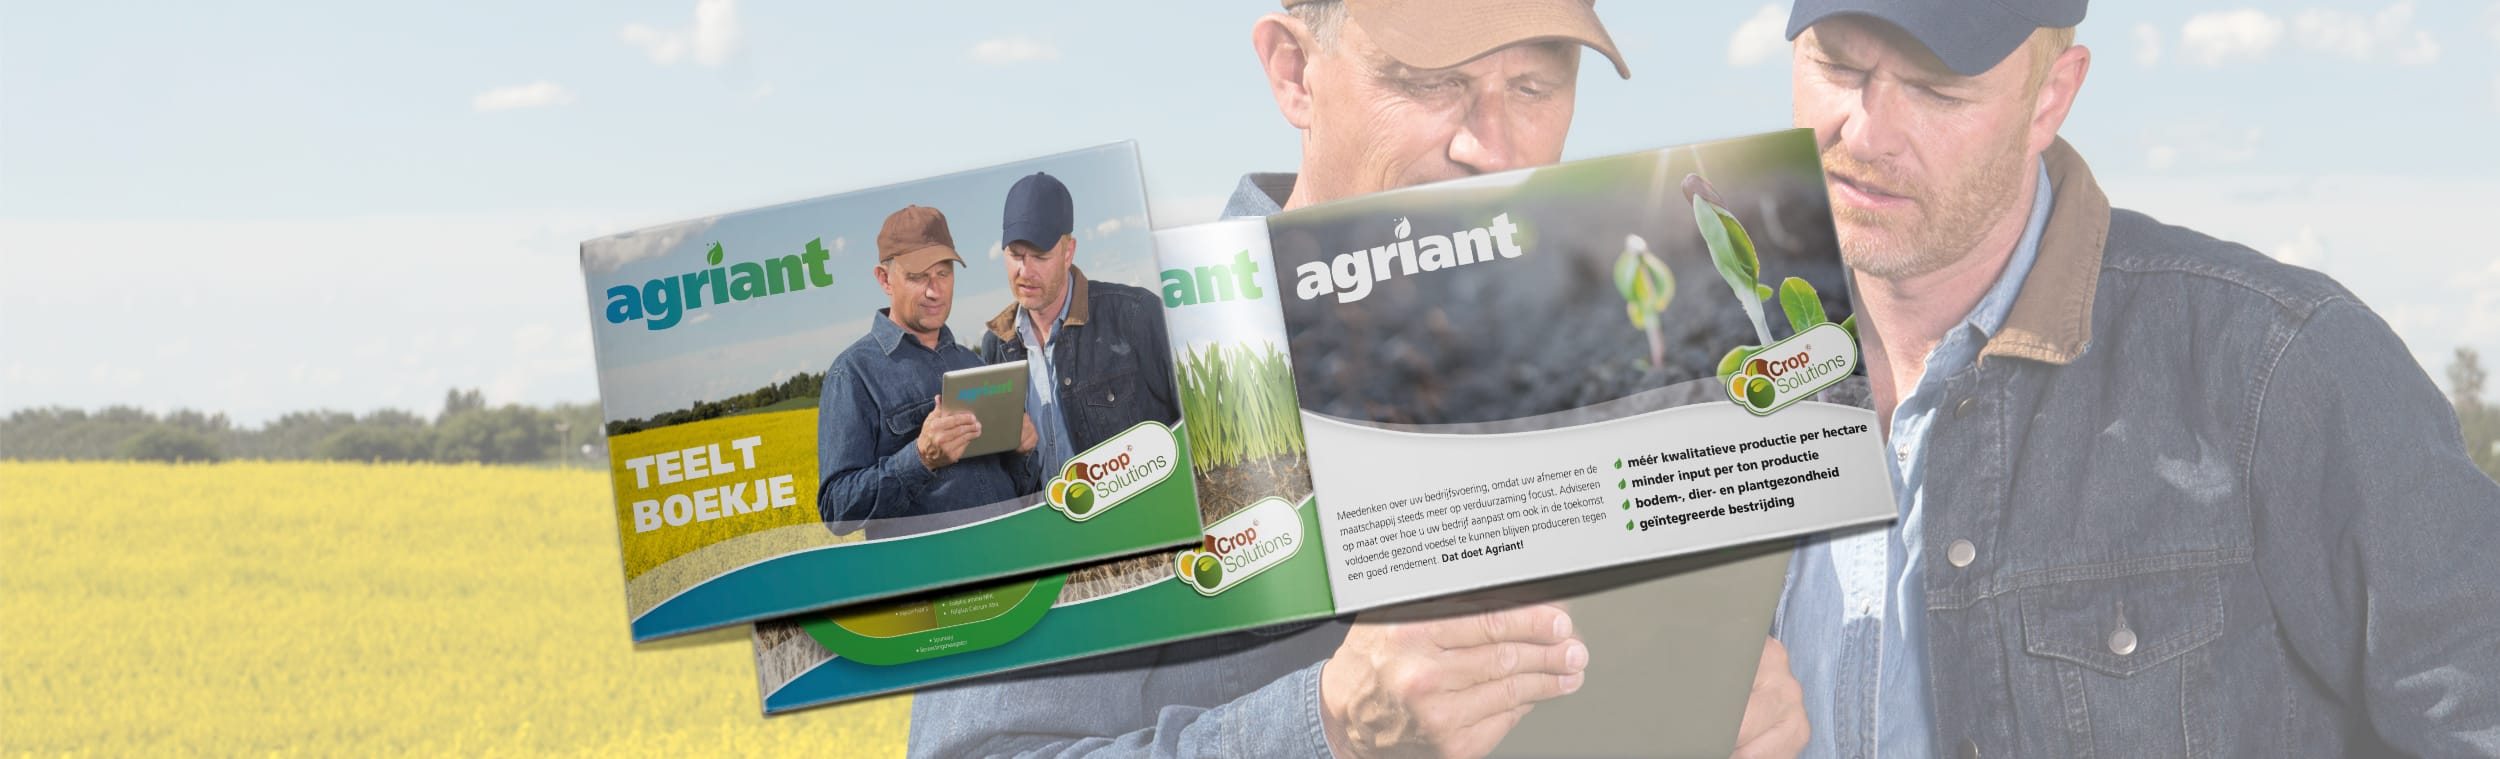 portfolio-agriant-teeltboekje